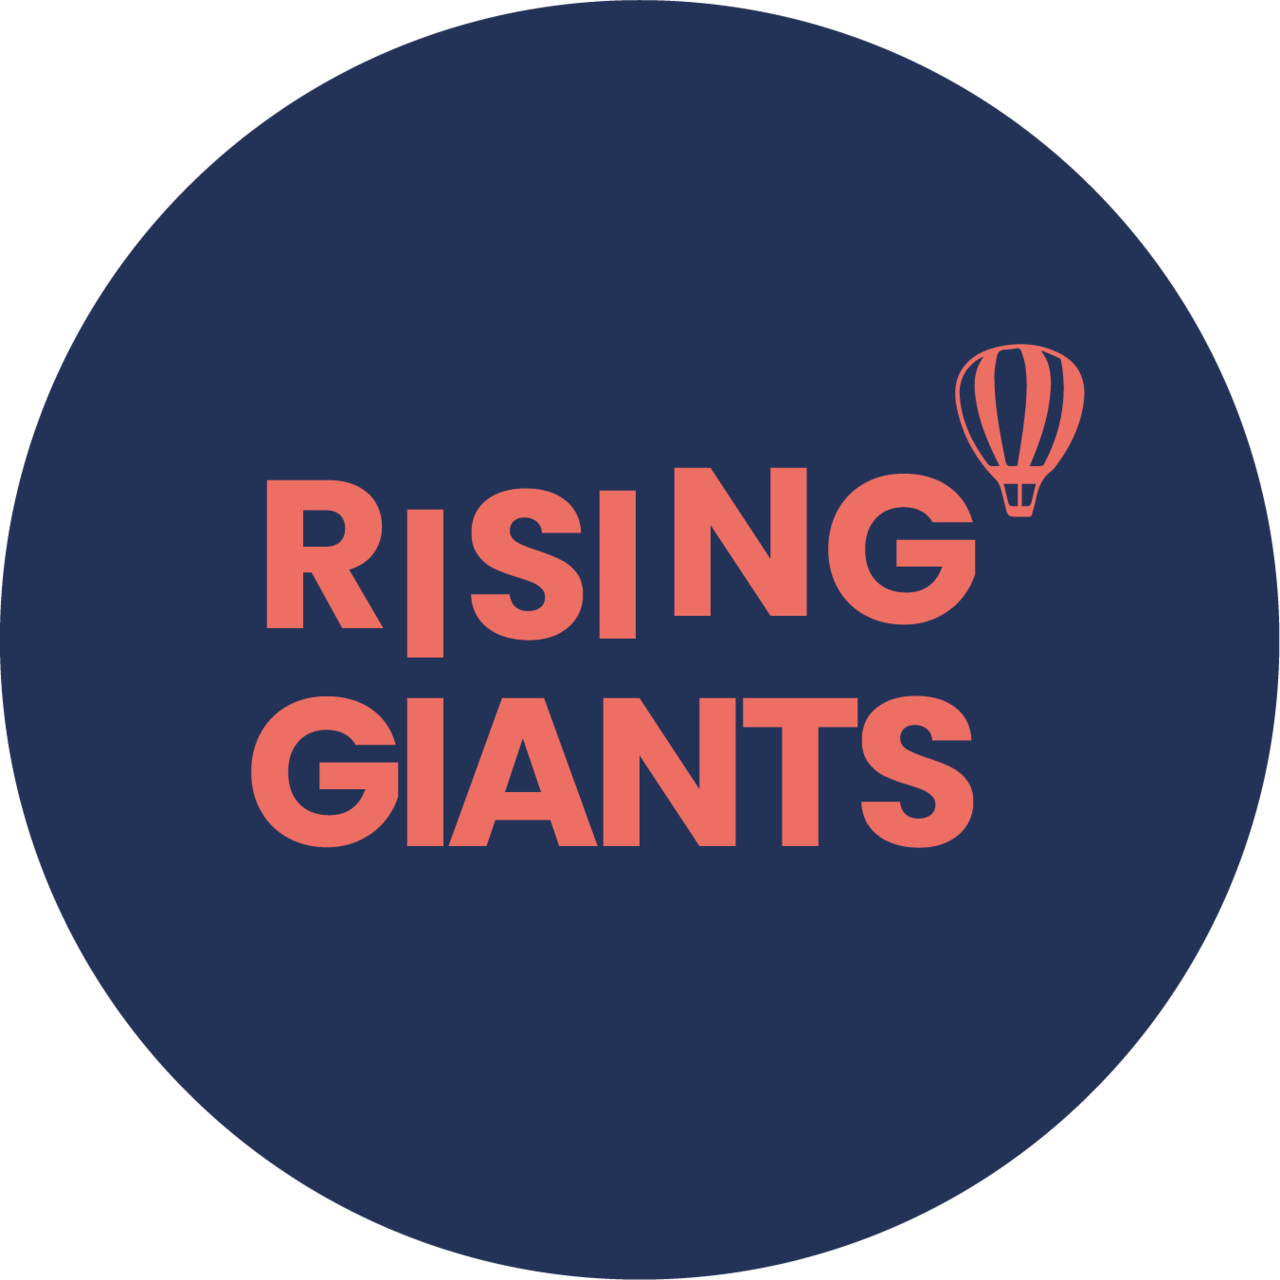 Rising Giant's Newsletter